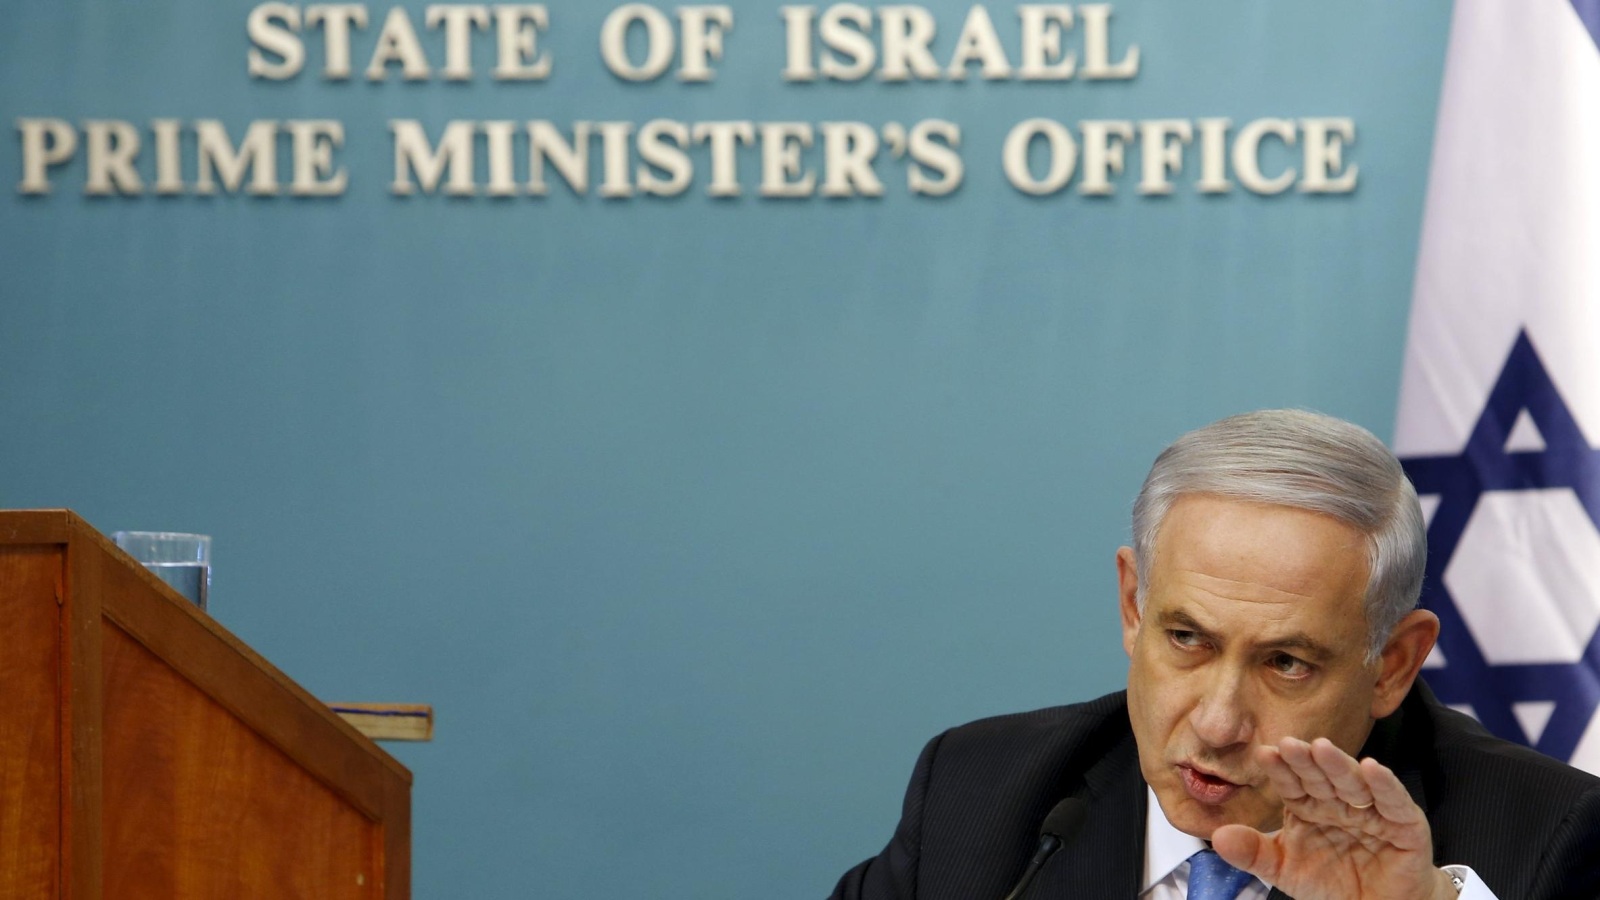 ‪صحيفة معاريف ذكرت أن نتنياهو يقول إنه ضد دولة ثنائية القومية ولكنه لا يوضح طبيعة الدولة الإسرائيلية‬ (رويترز)